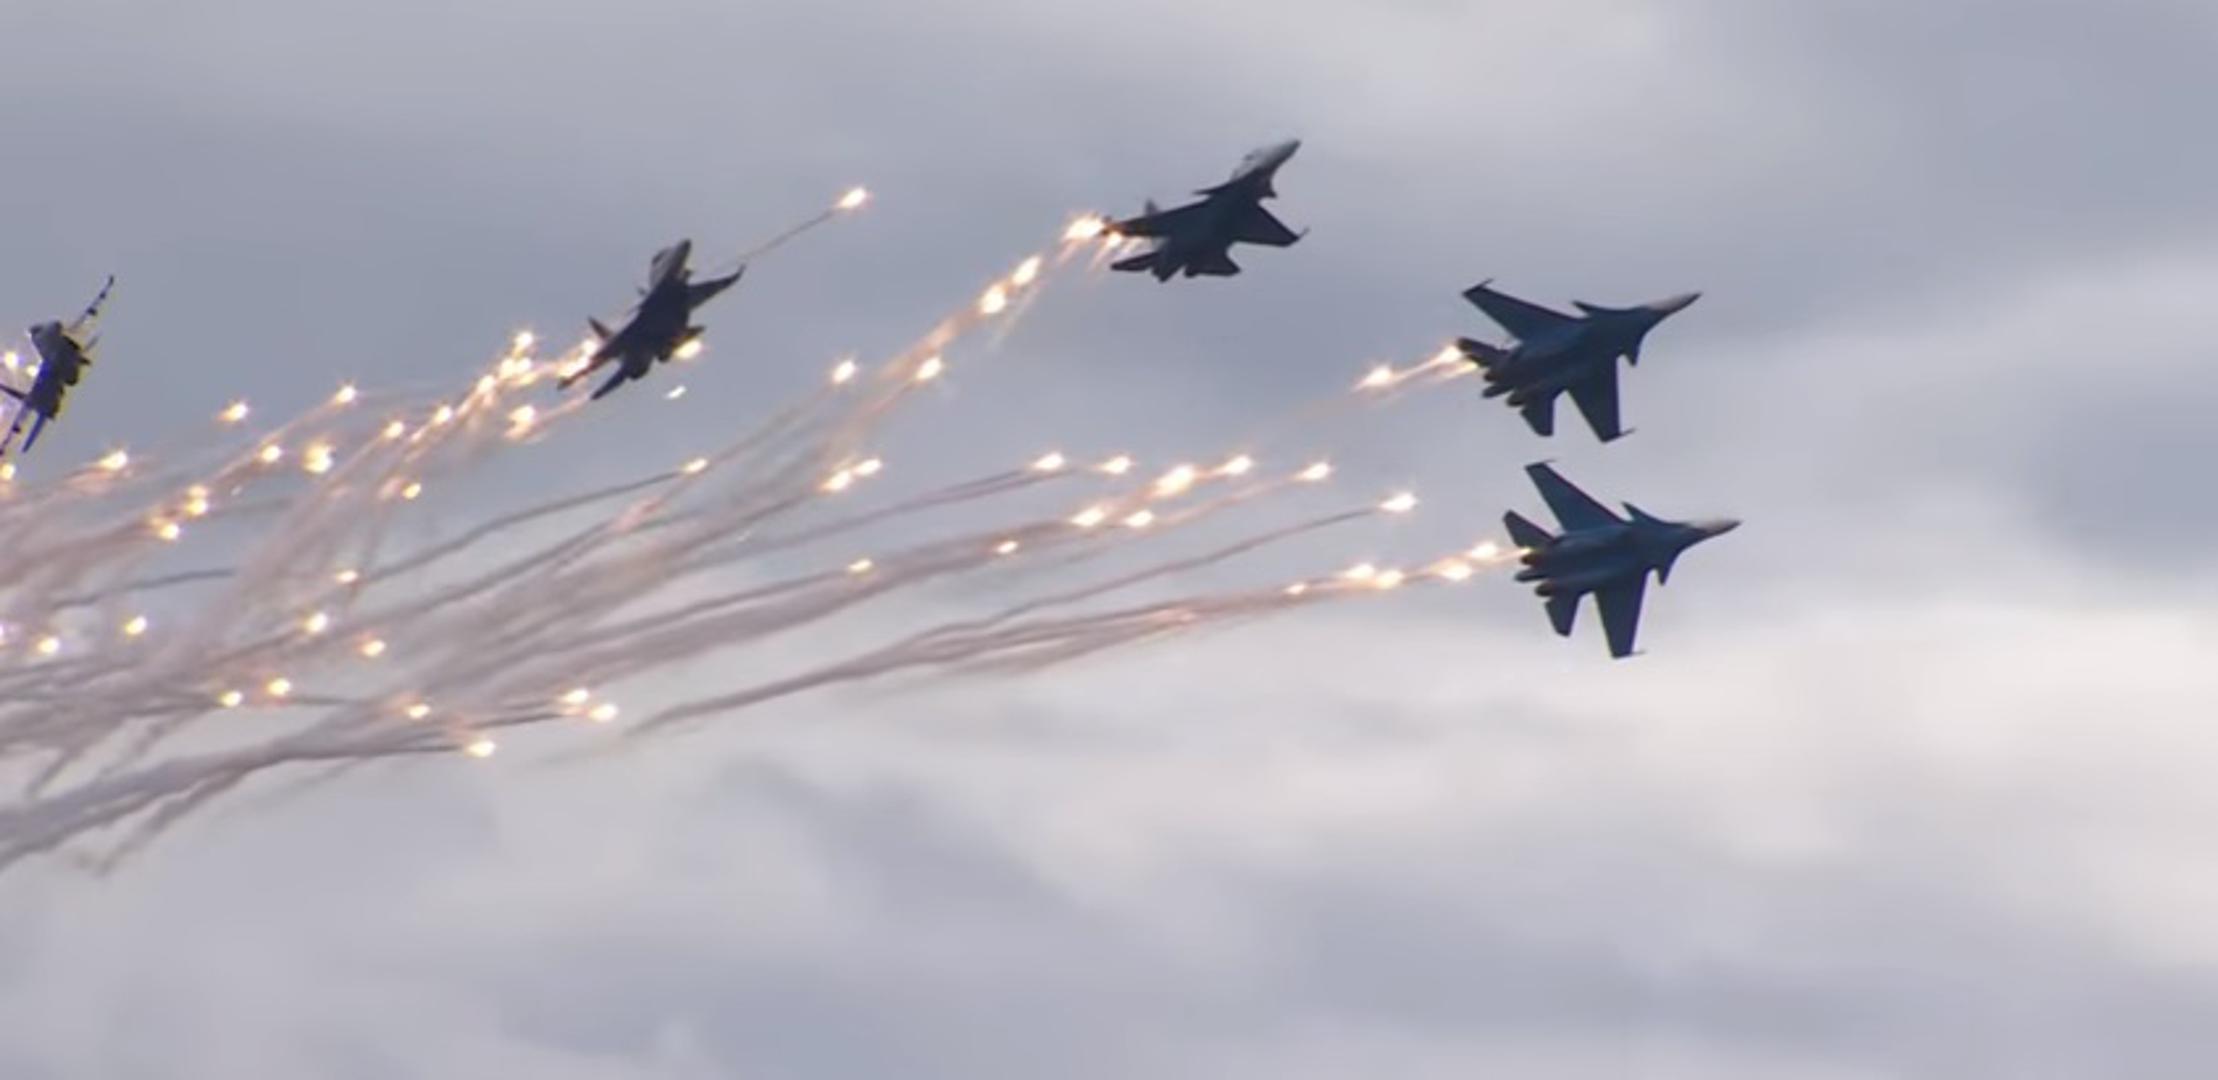 Zrakoplovna akrobatska skupina Ruski vitezovi zadivila je gledatelje svojim umijećem tijekom nastupa u sklopu vojnog foruma Armija 2017. u zračnoj bazi Kubinka kod Moskve. 